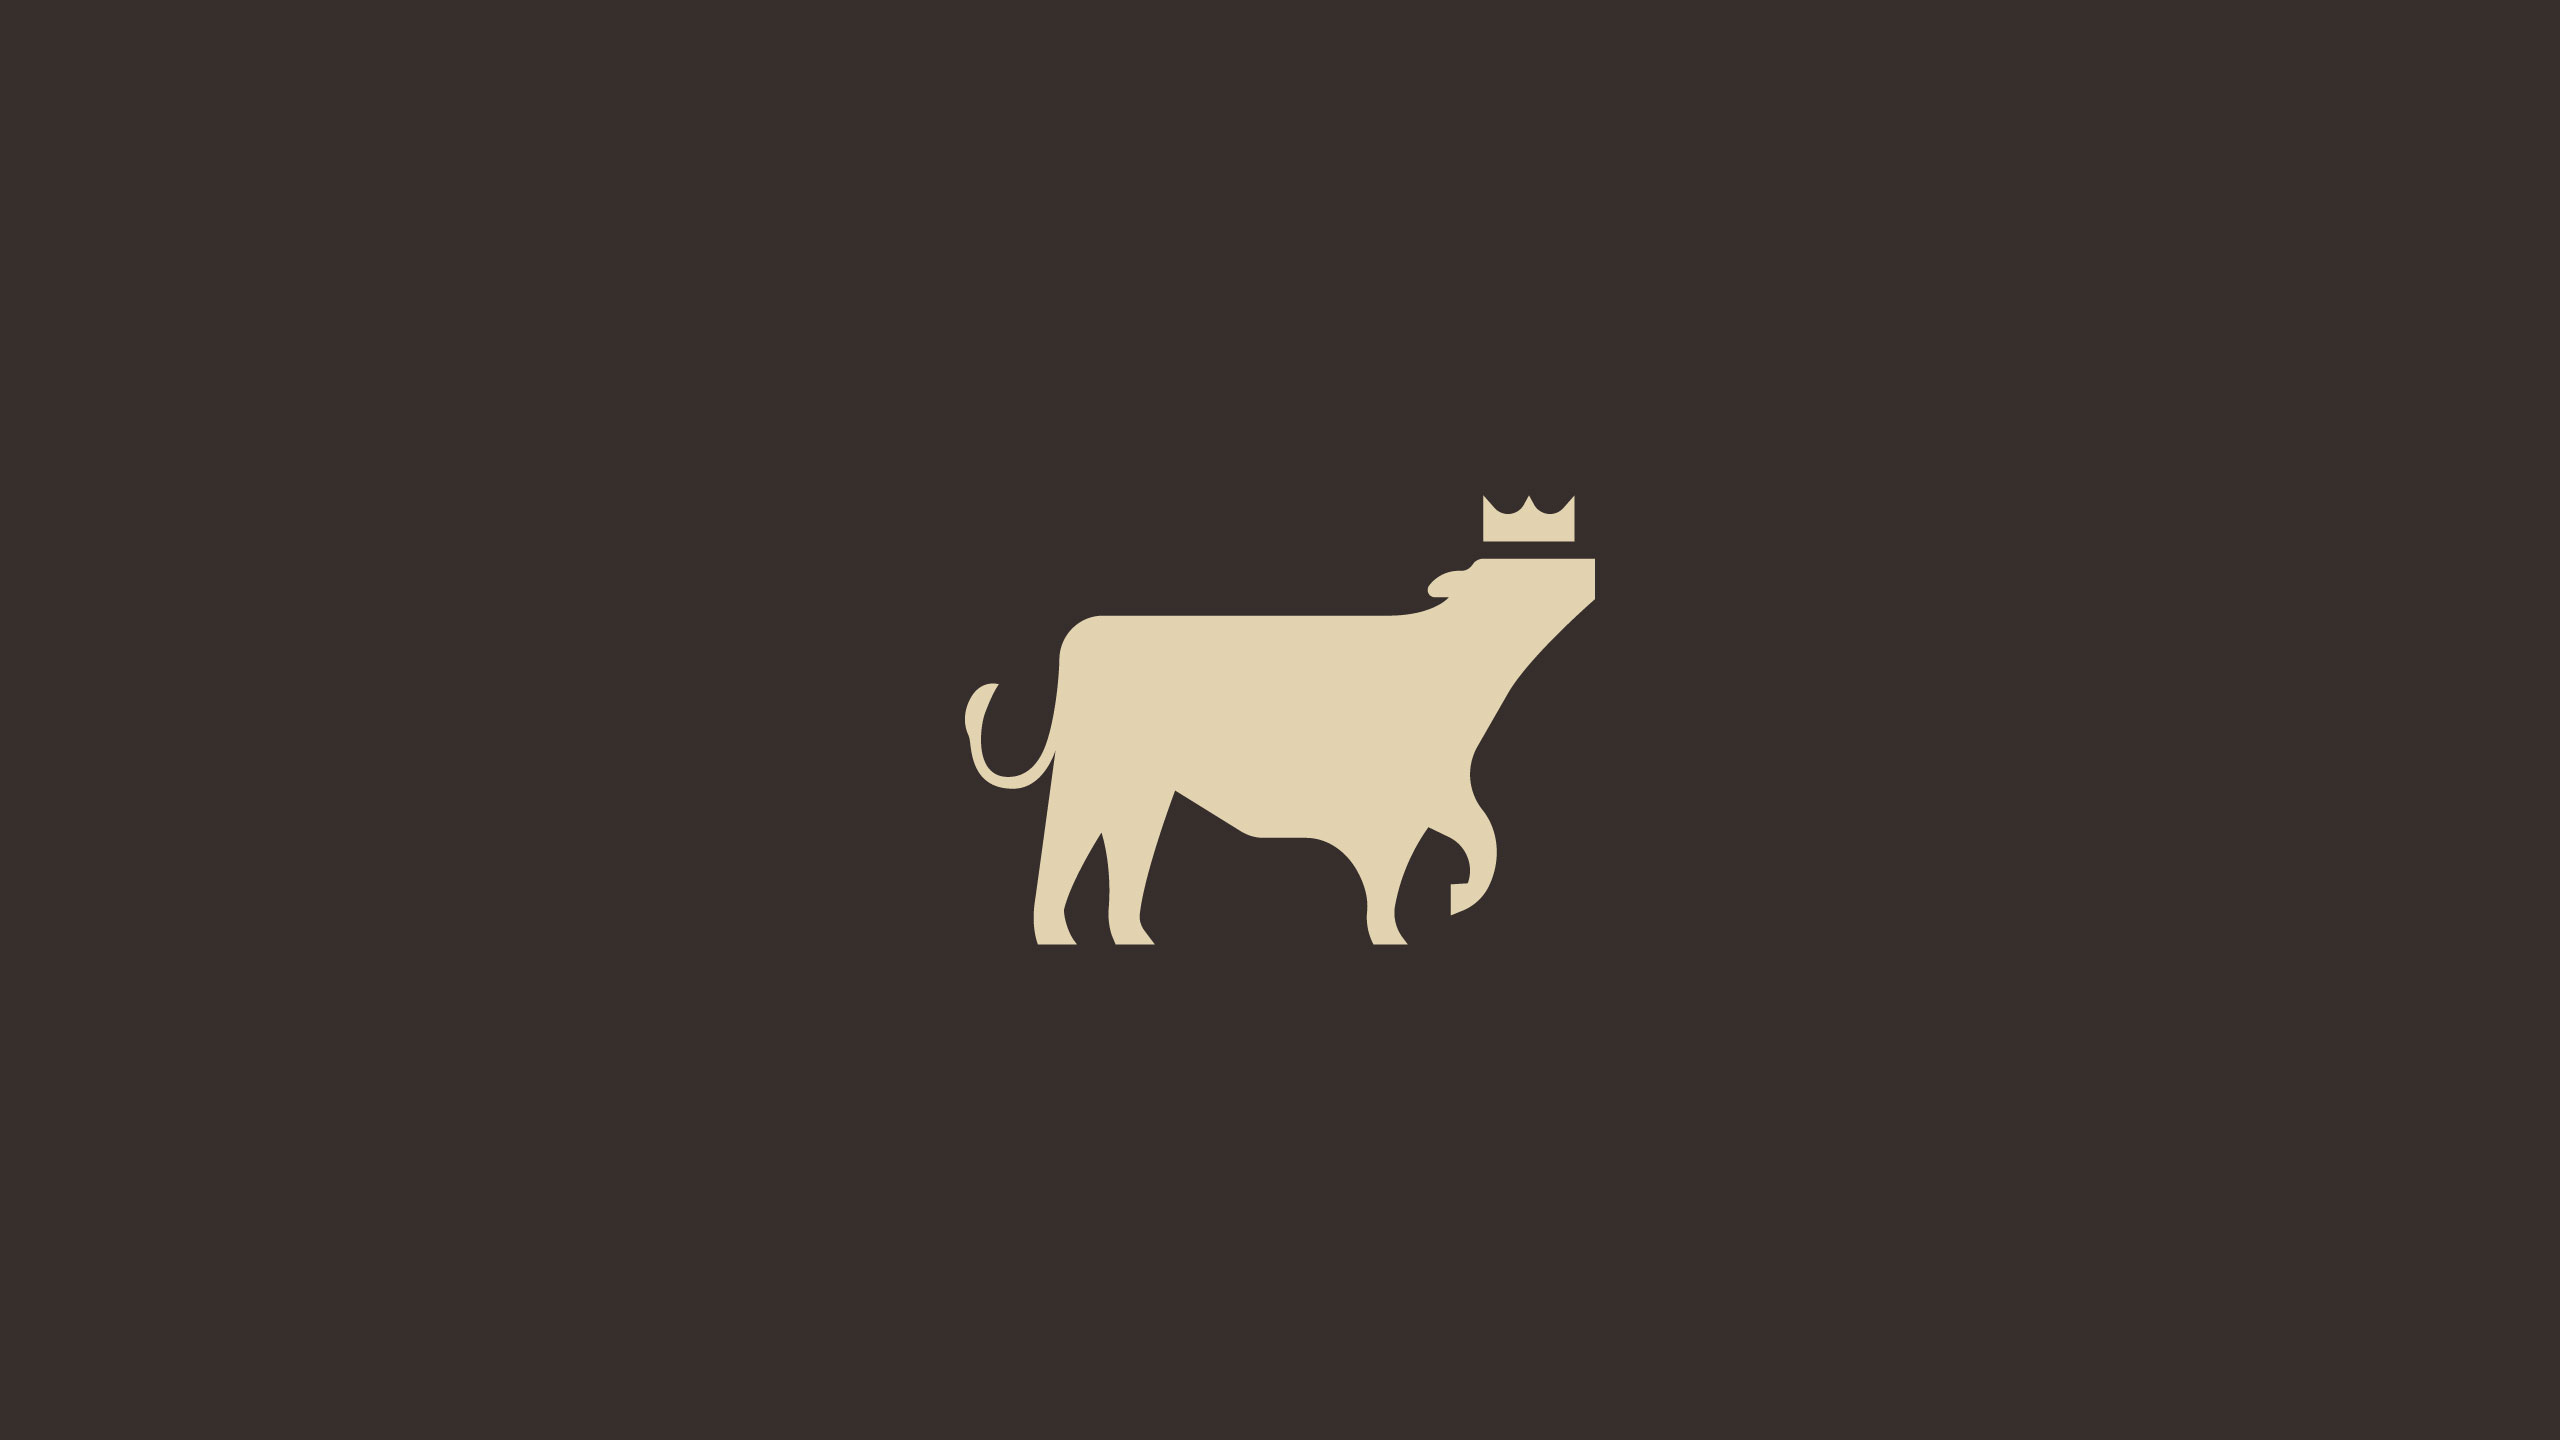 Minimalist icon designed for Filipino meat brand Primebeef